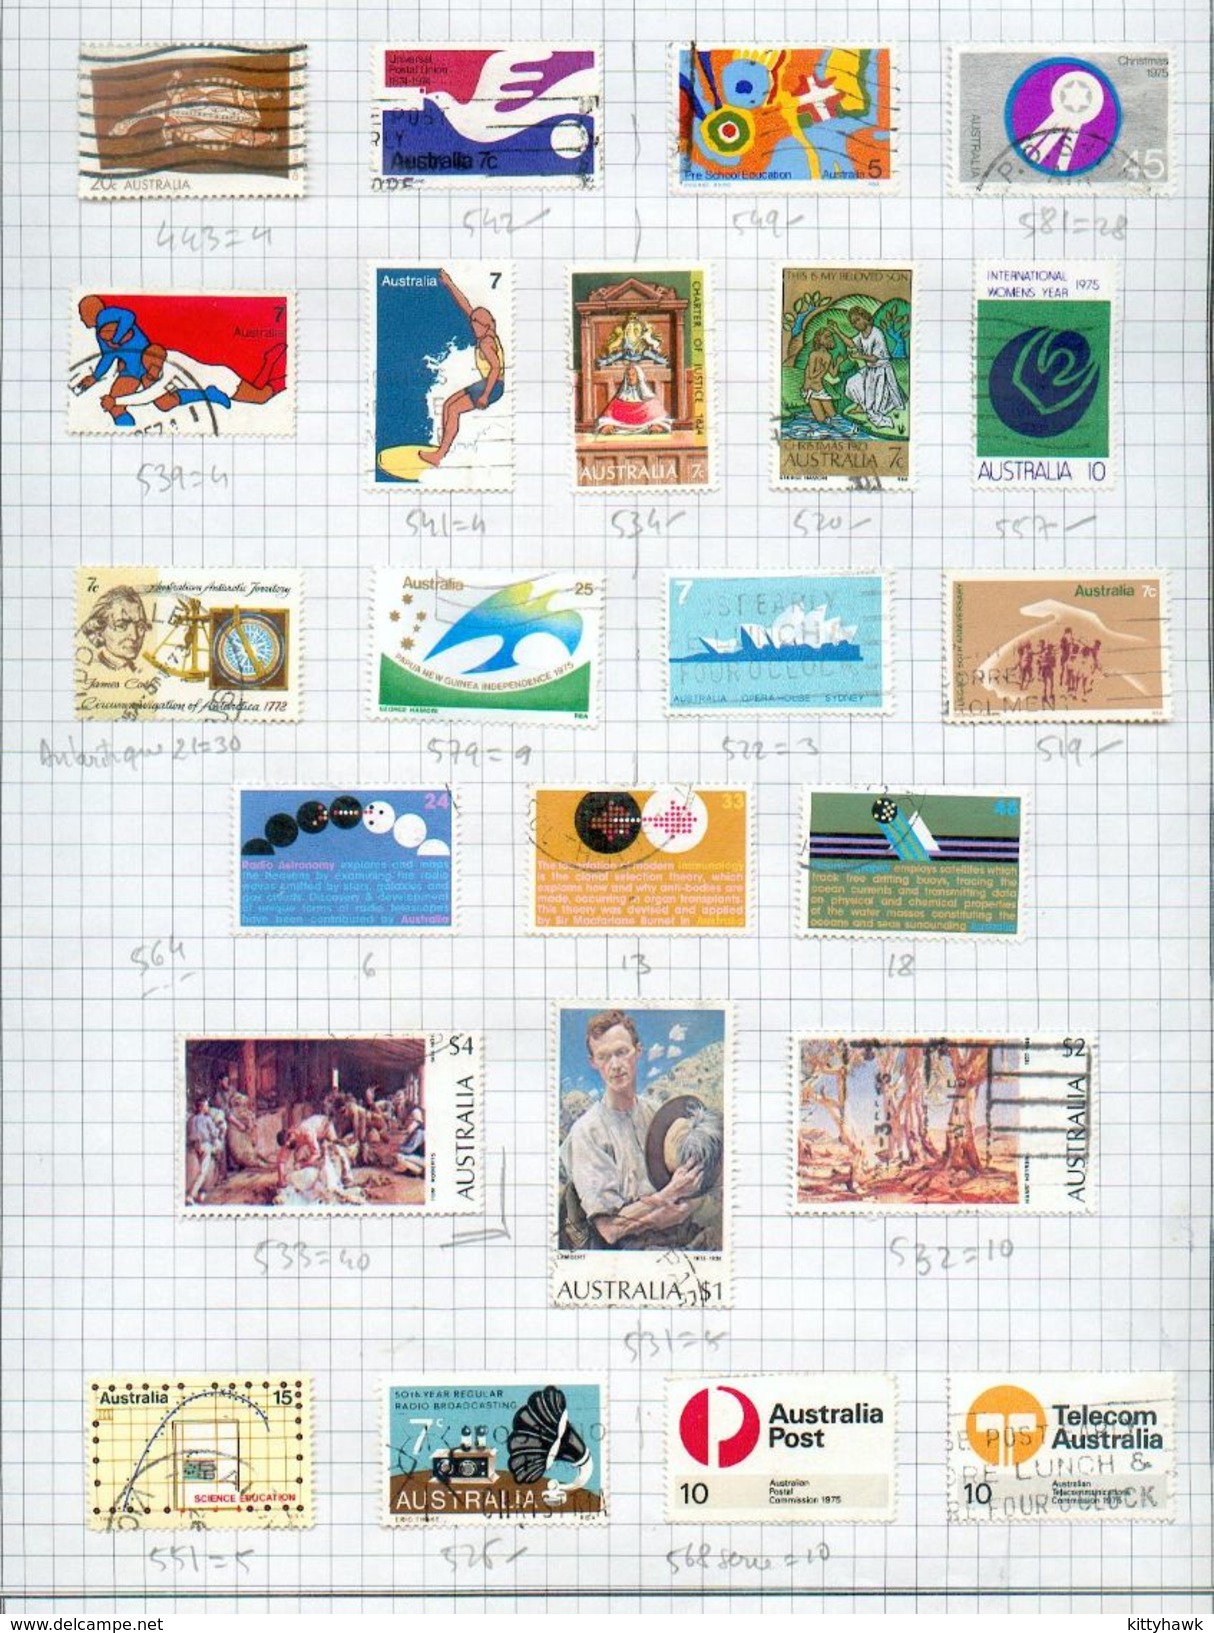 AUSTRALIE - petite collection oblitérée de plus de 450 timbres - BE